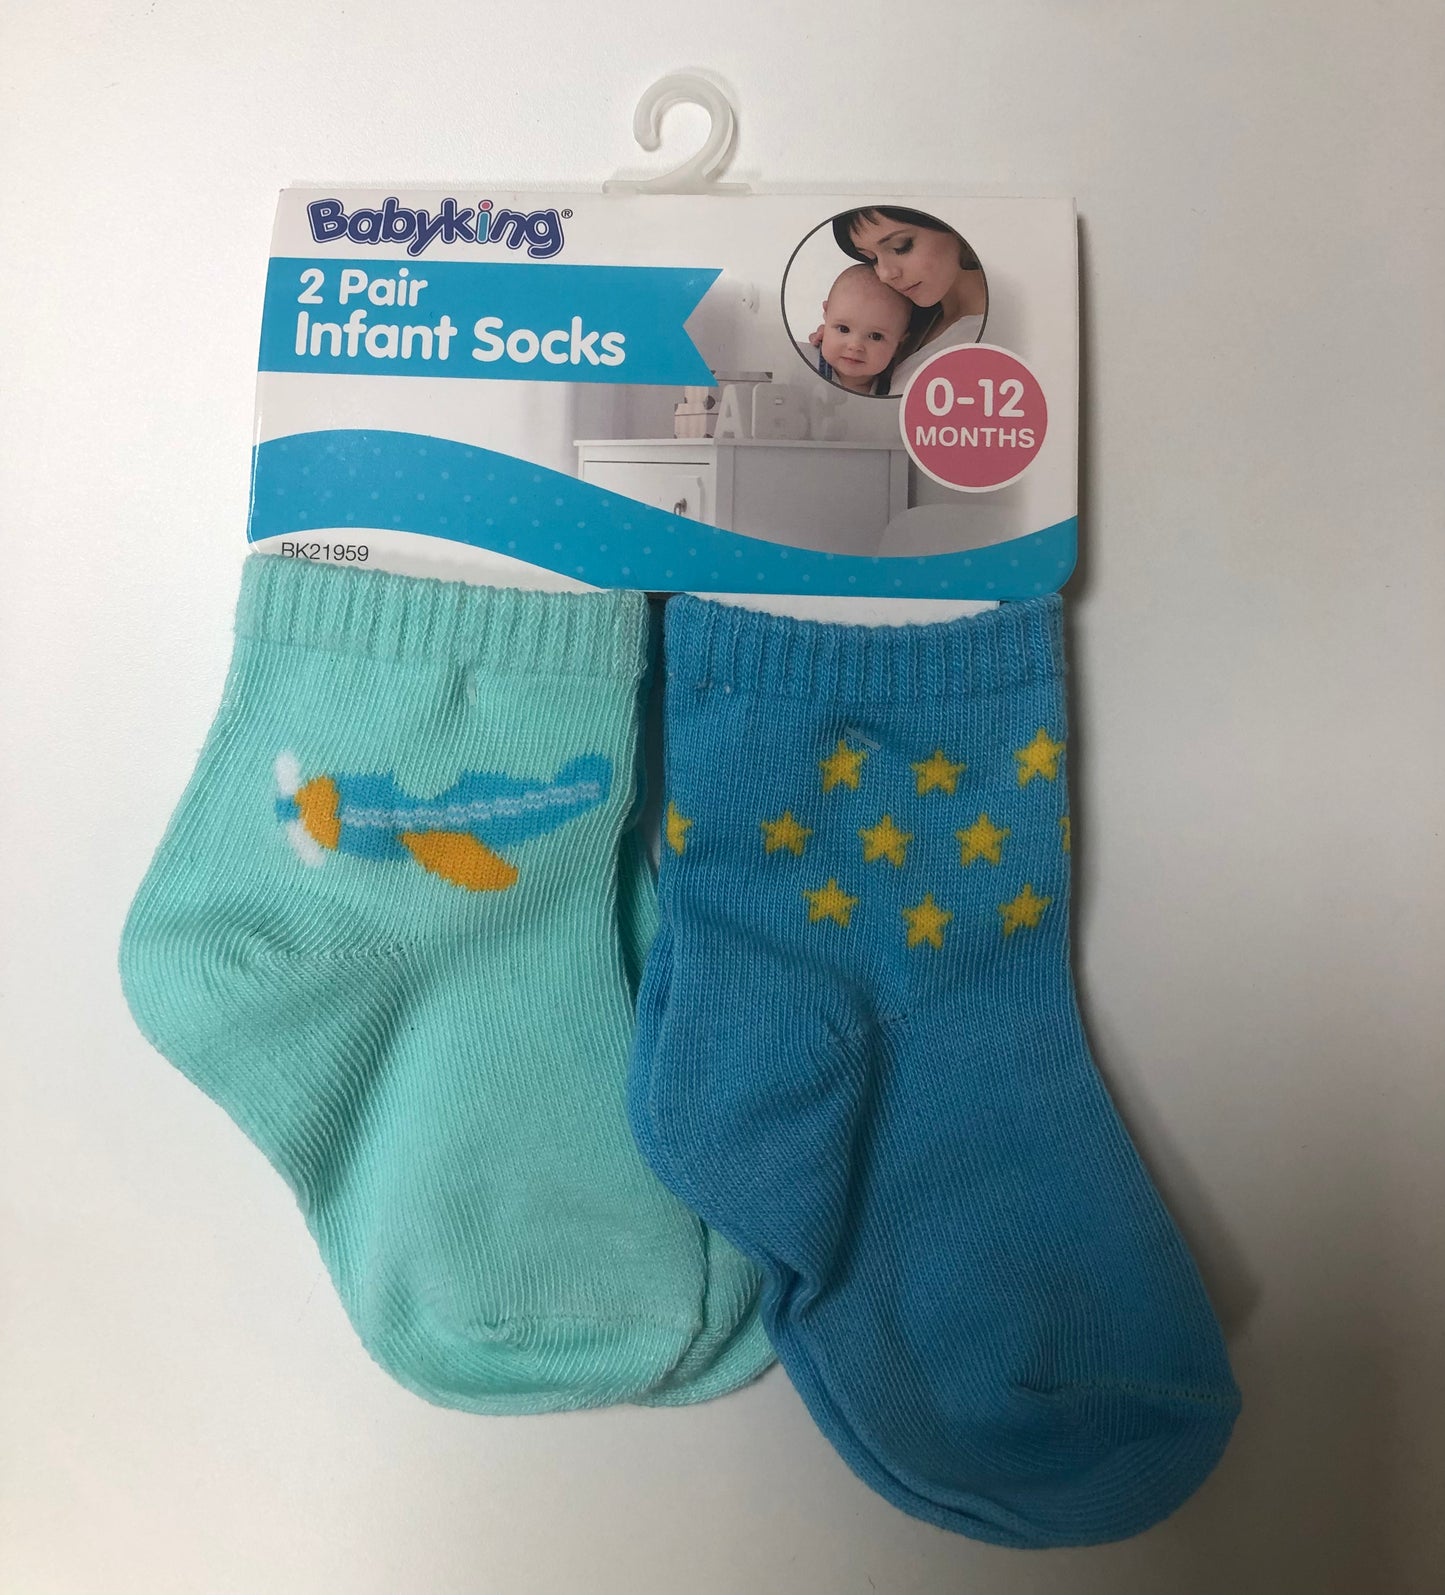 2pr Infant socks pink/blue assorted